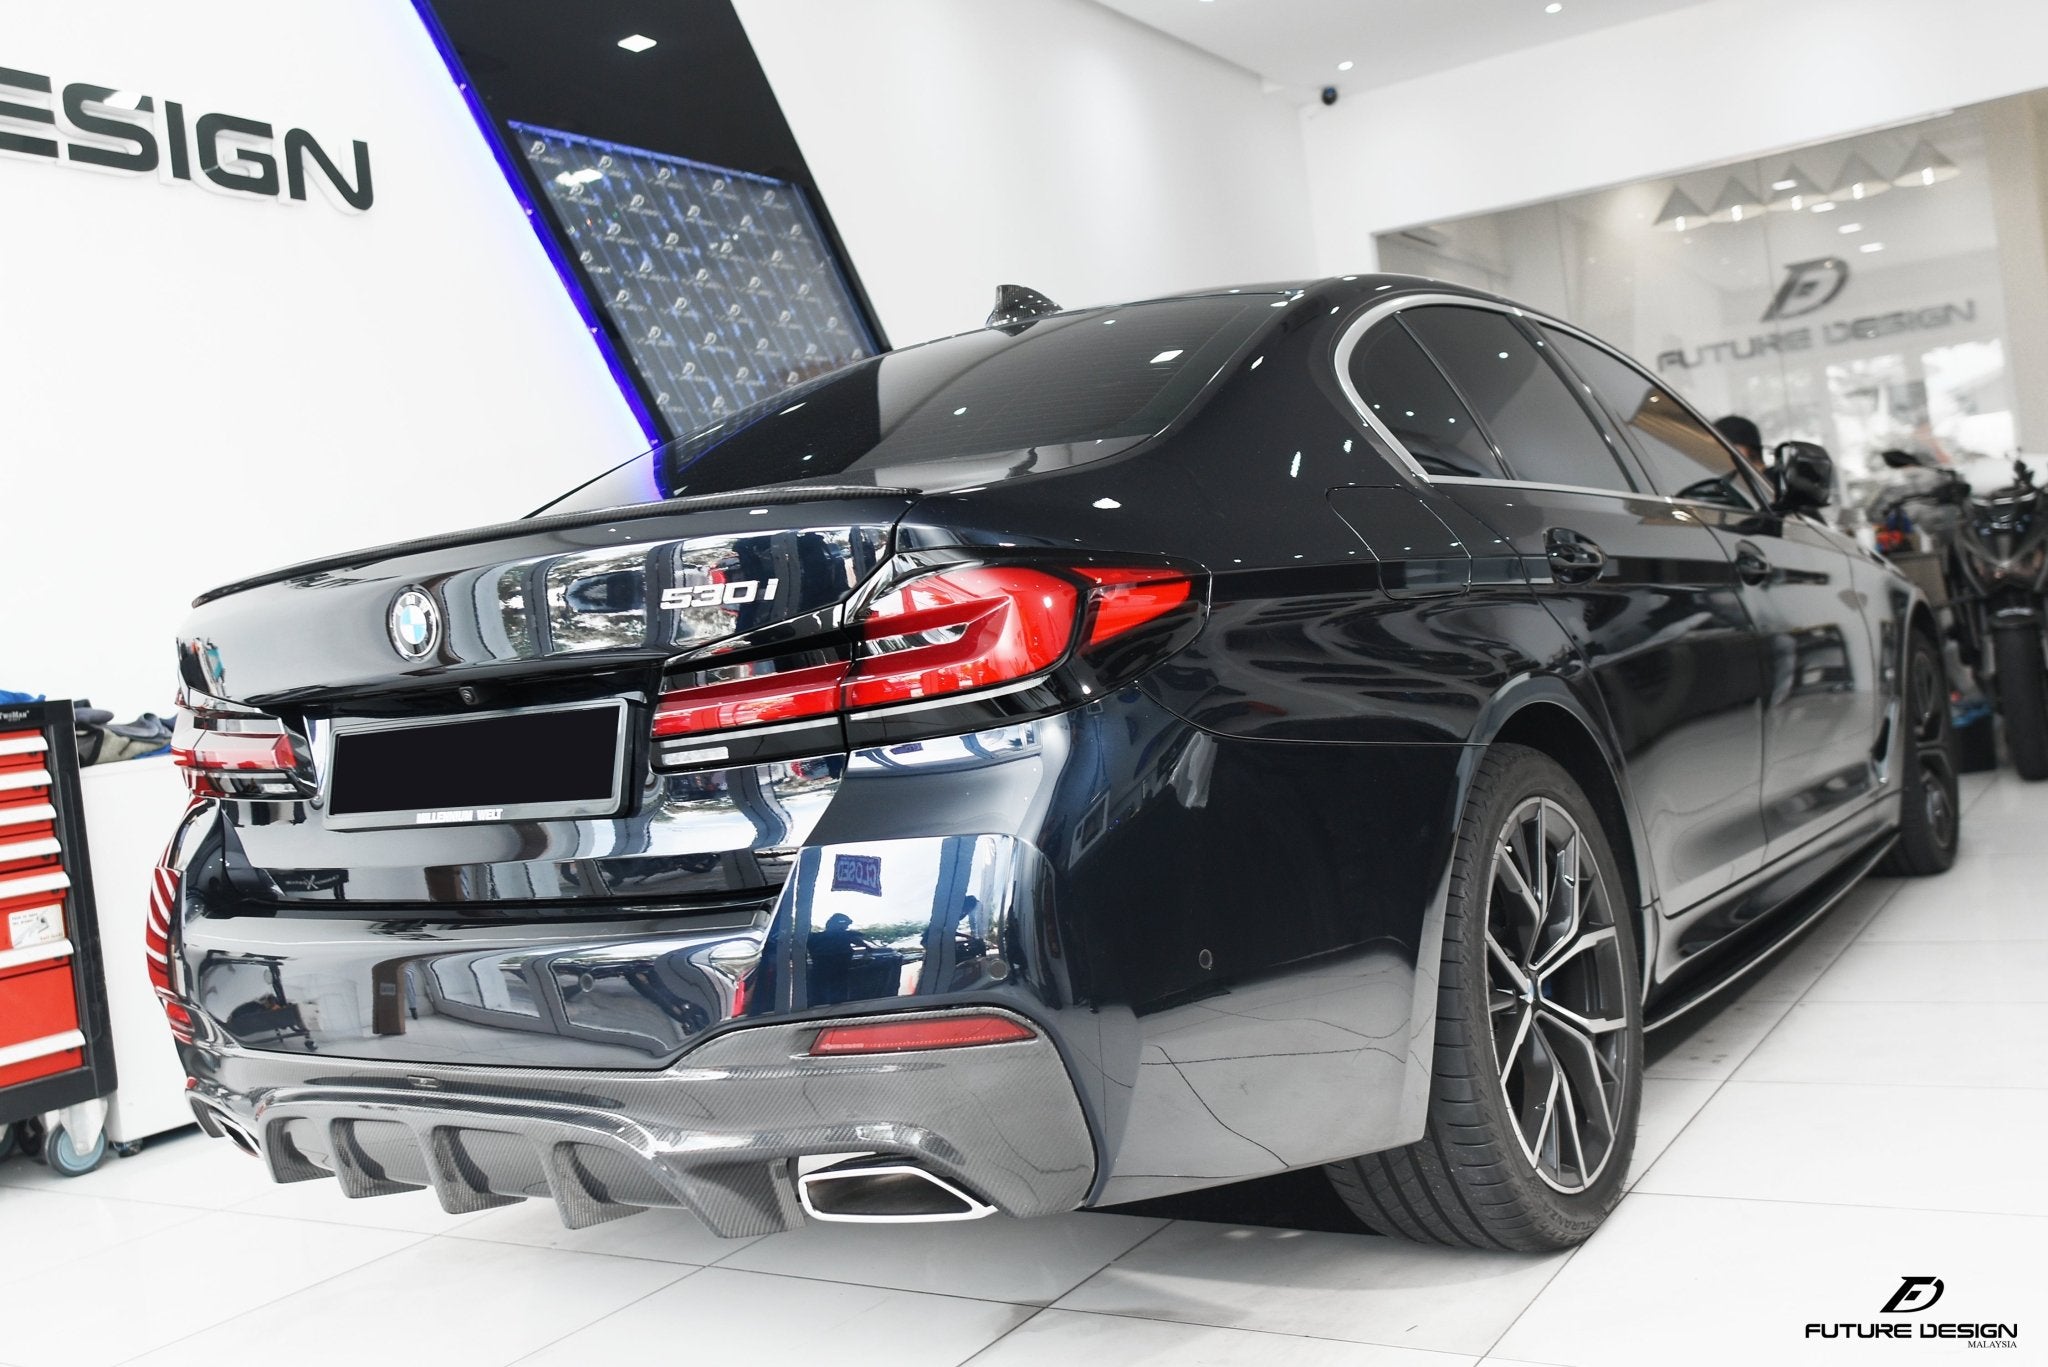 FUTURE DESIGN - BMW 5 SERIES G30 PRE LCI CARBON FIBRE REAR DIFFUSER ( FD STYLE ) - Aero Carbon UK